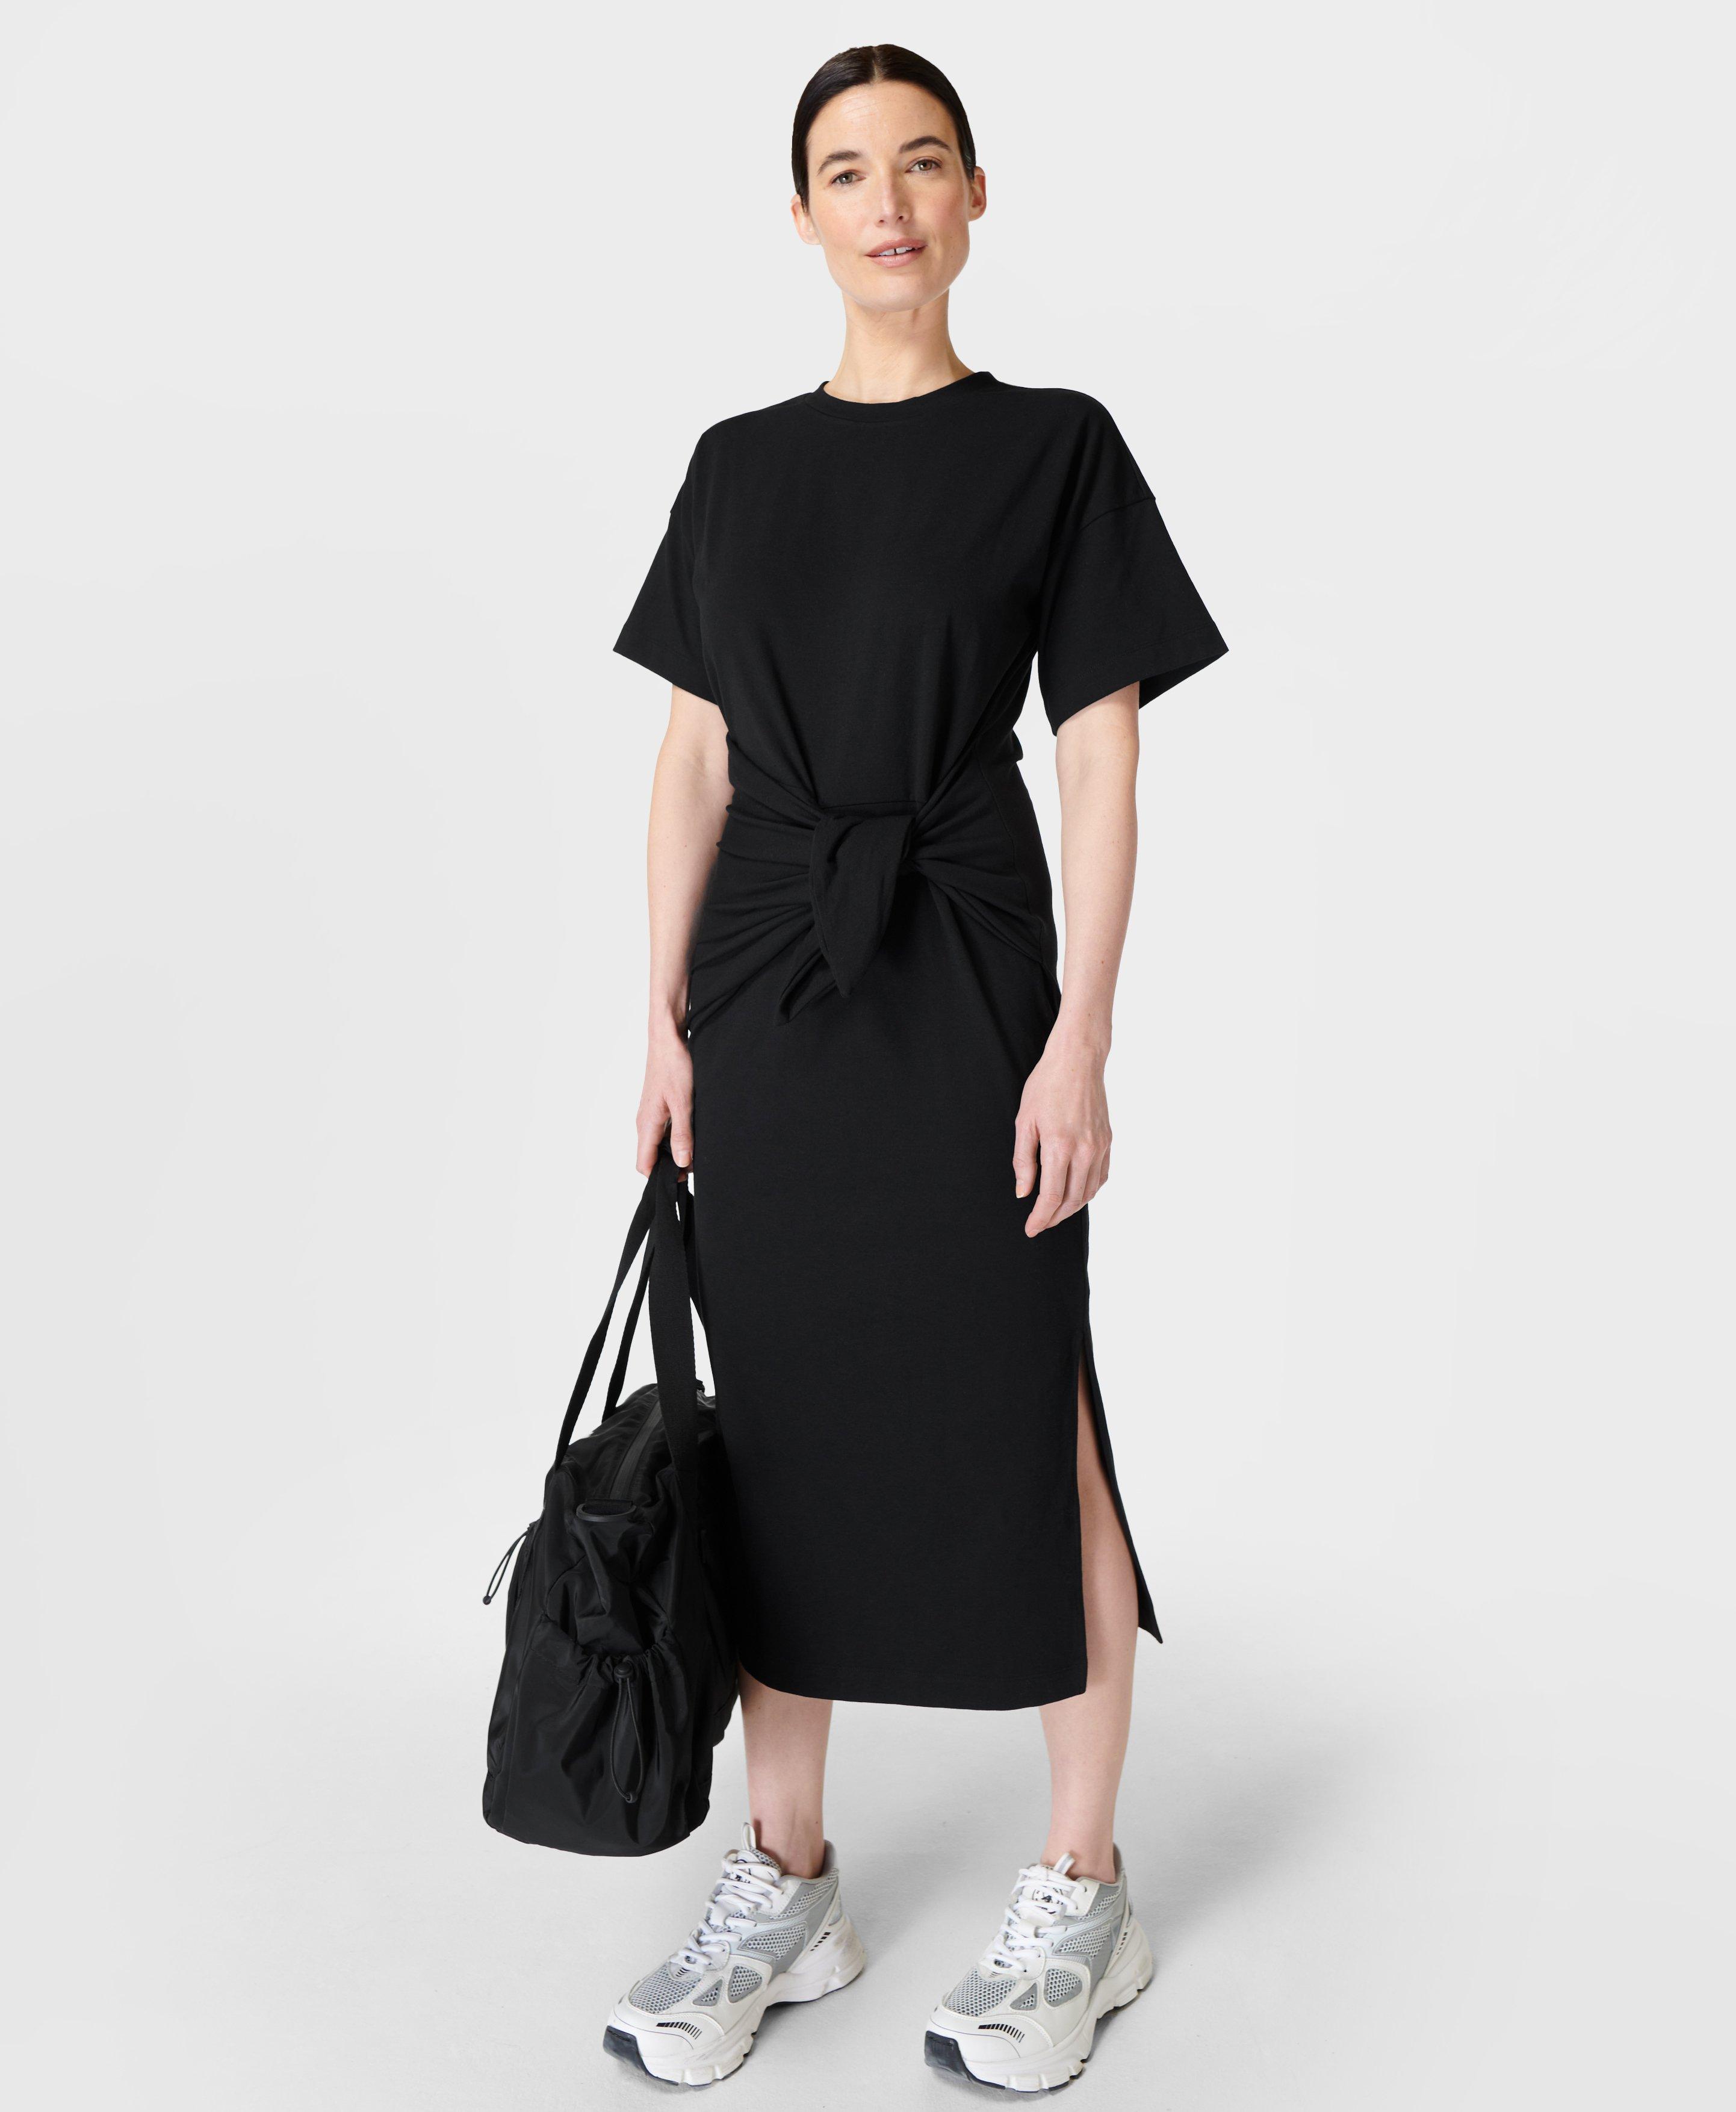 Black Midi Dresses for Women